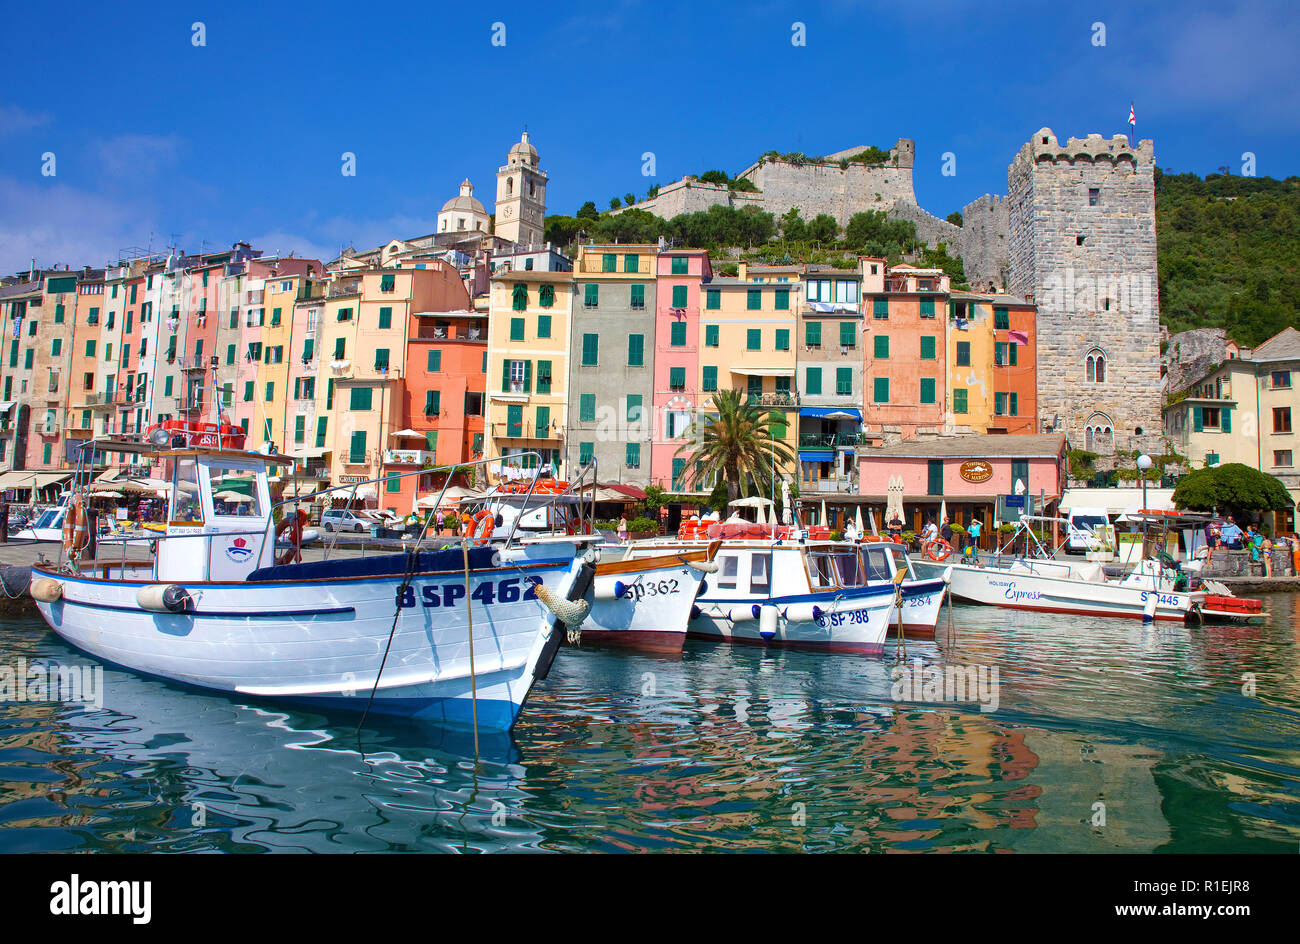 Coloratissima fila di case presso il porto di Portovenere, provincia di La Spezia e la Riviera di Levante, Liguria, Italia Foto Stock